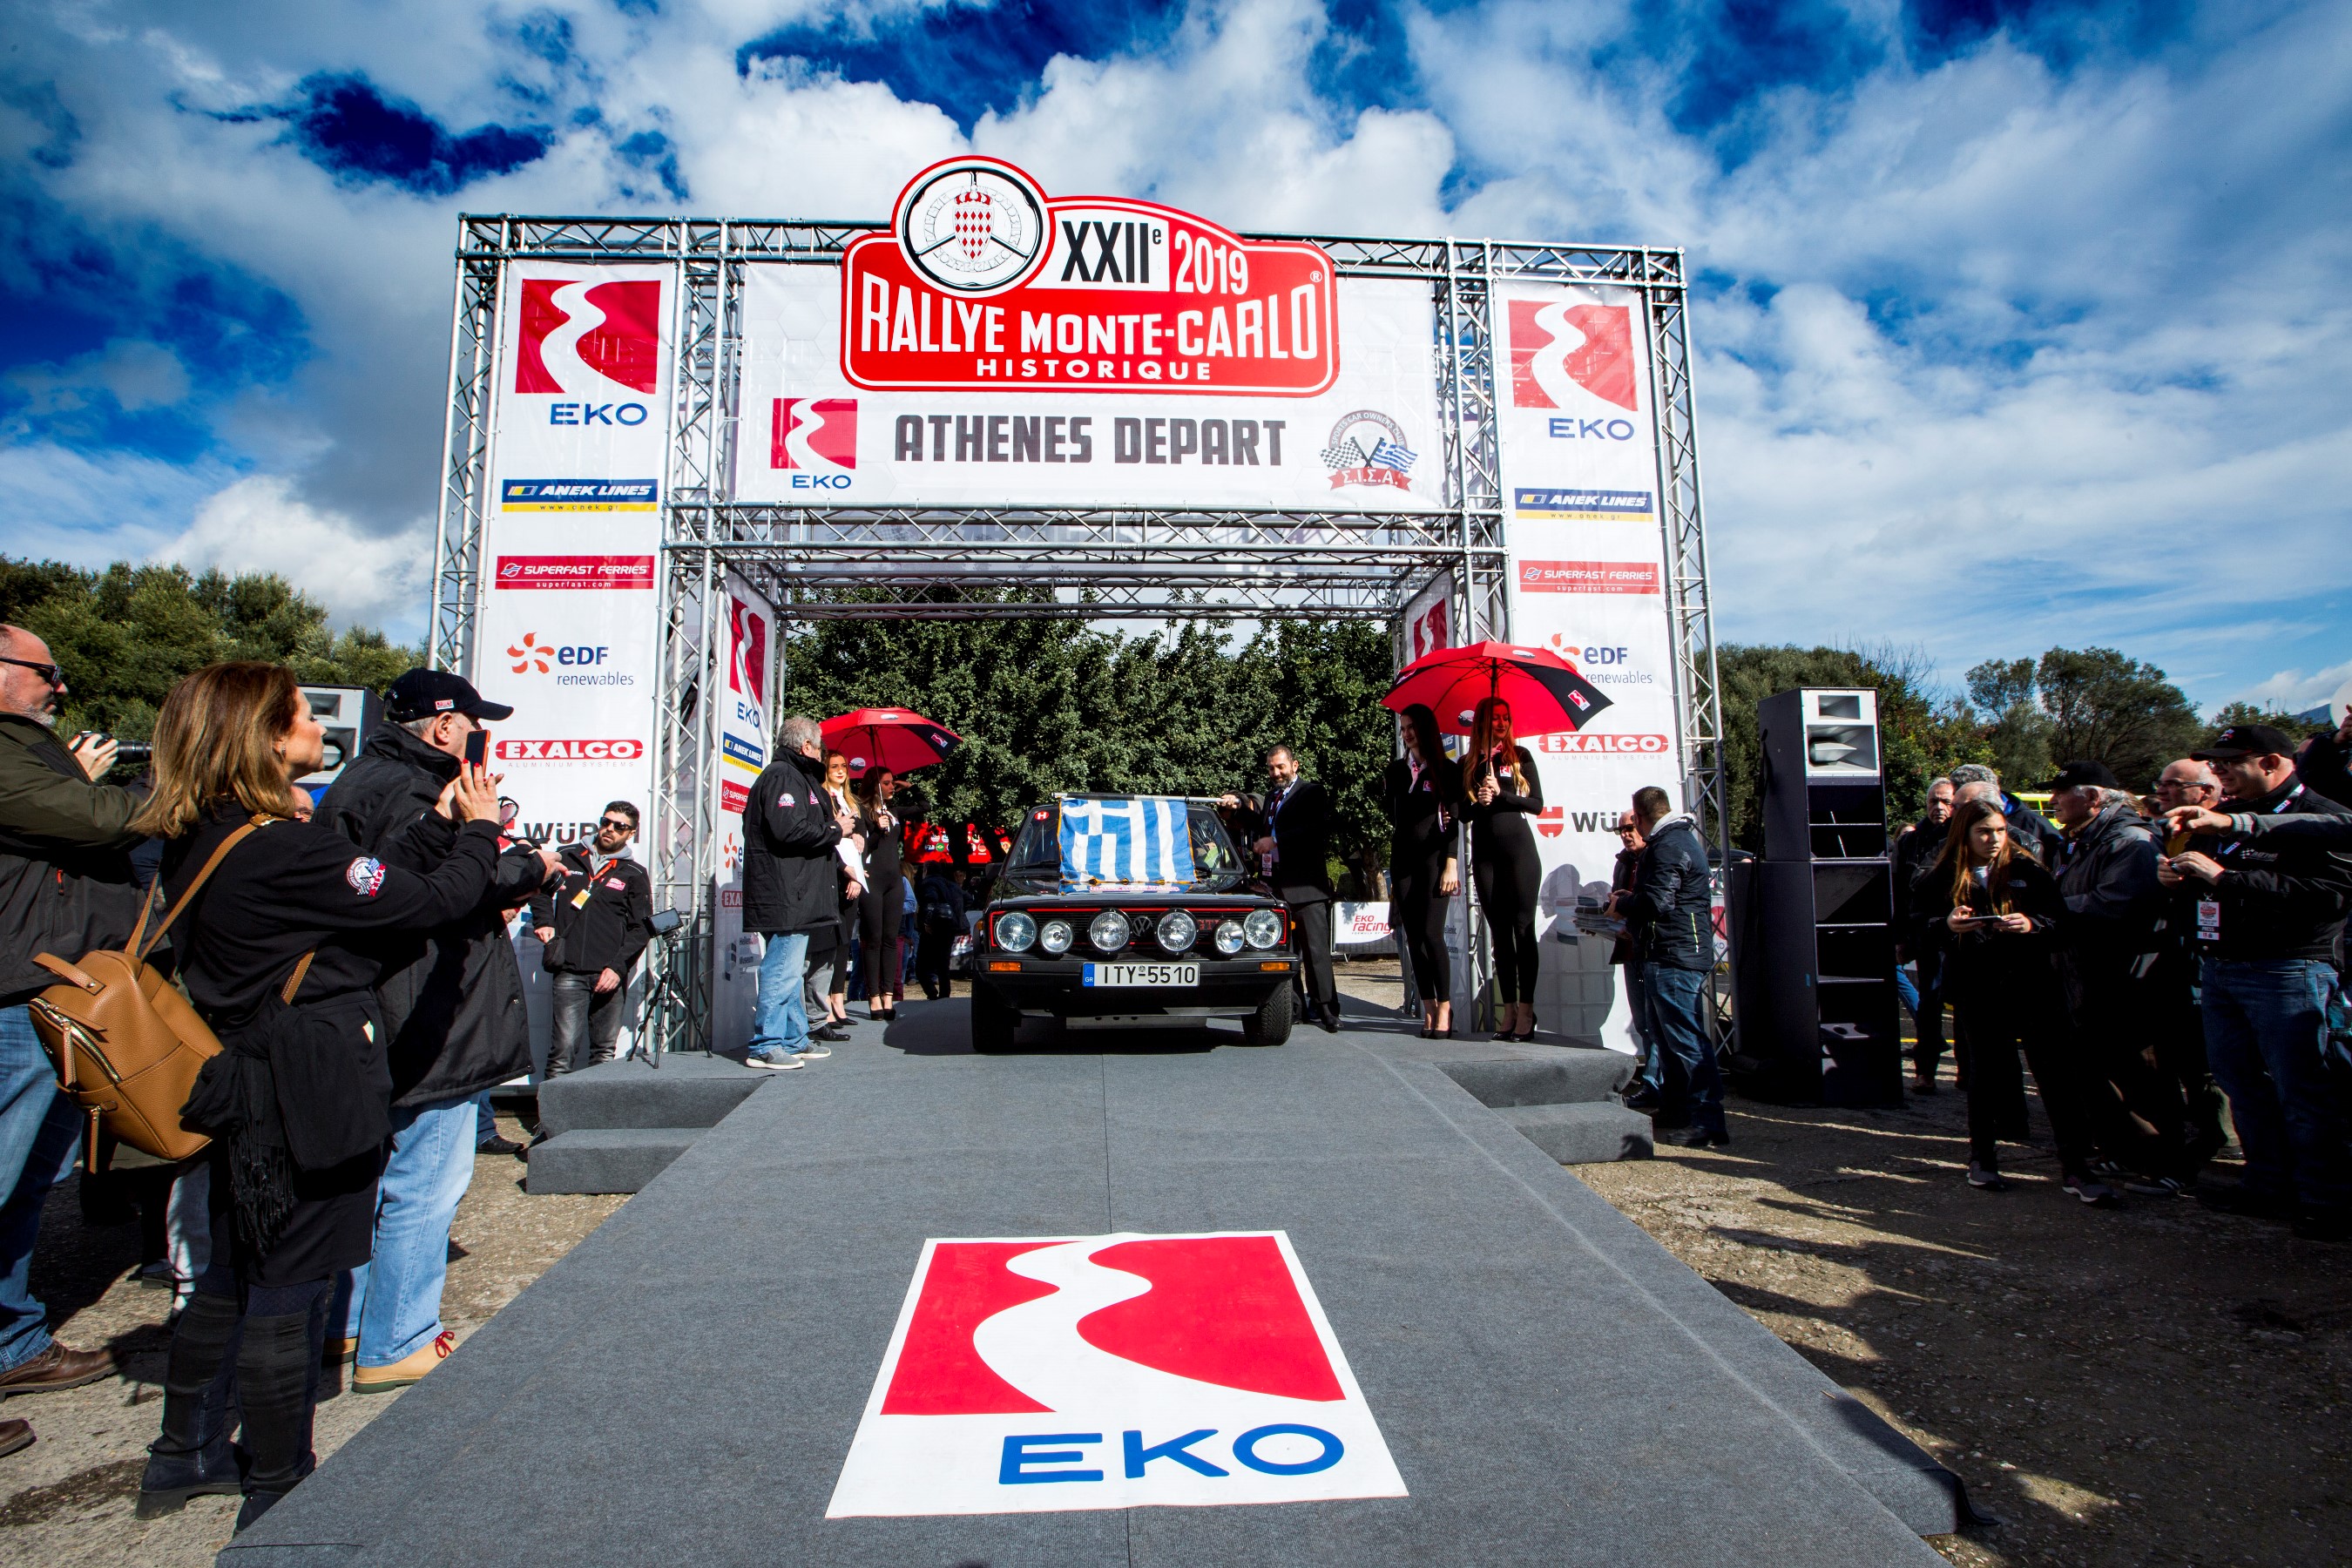 Η ΕΚΟ μέγας χορηγό του «22ο Rallye Monte-Carlo Historique»